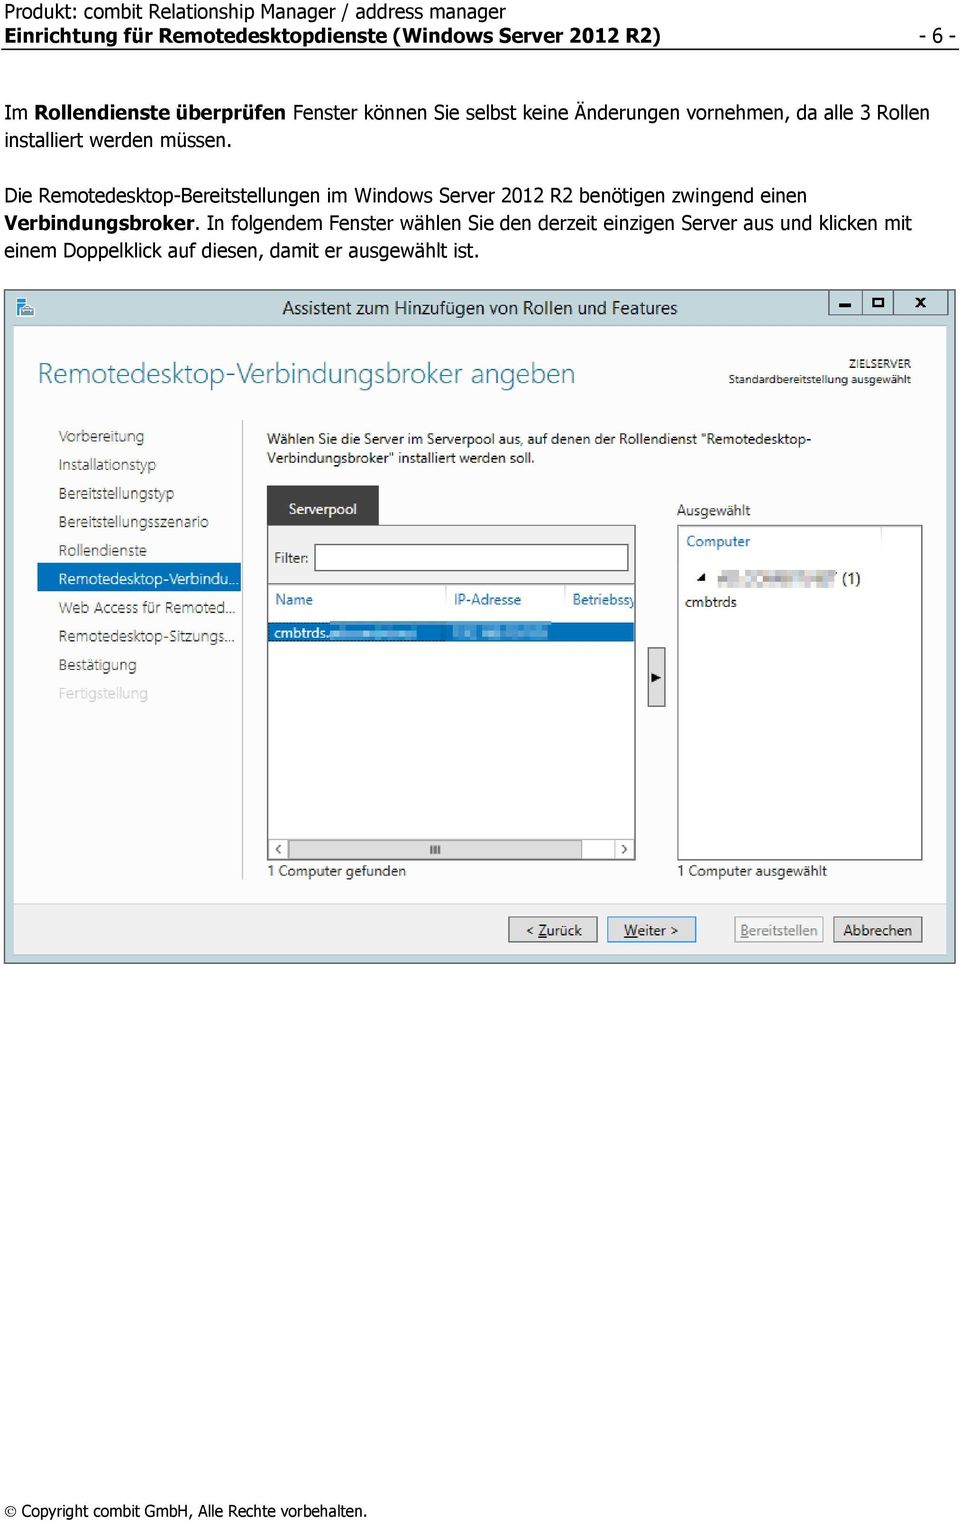 Die Remotedesktop-Bereitstellungen im Windows Server 2012 R2 benötigen zwingend einen Verbindungsbroker.